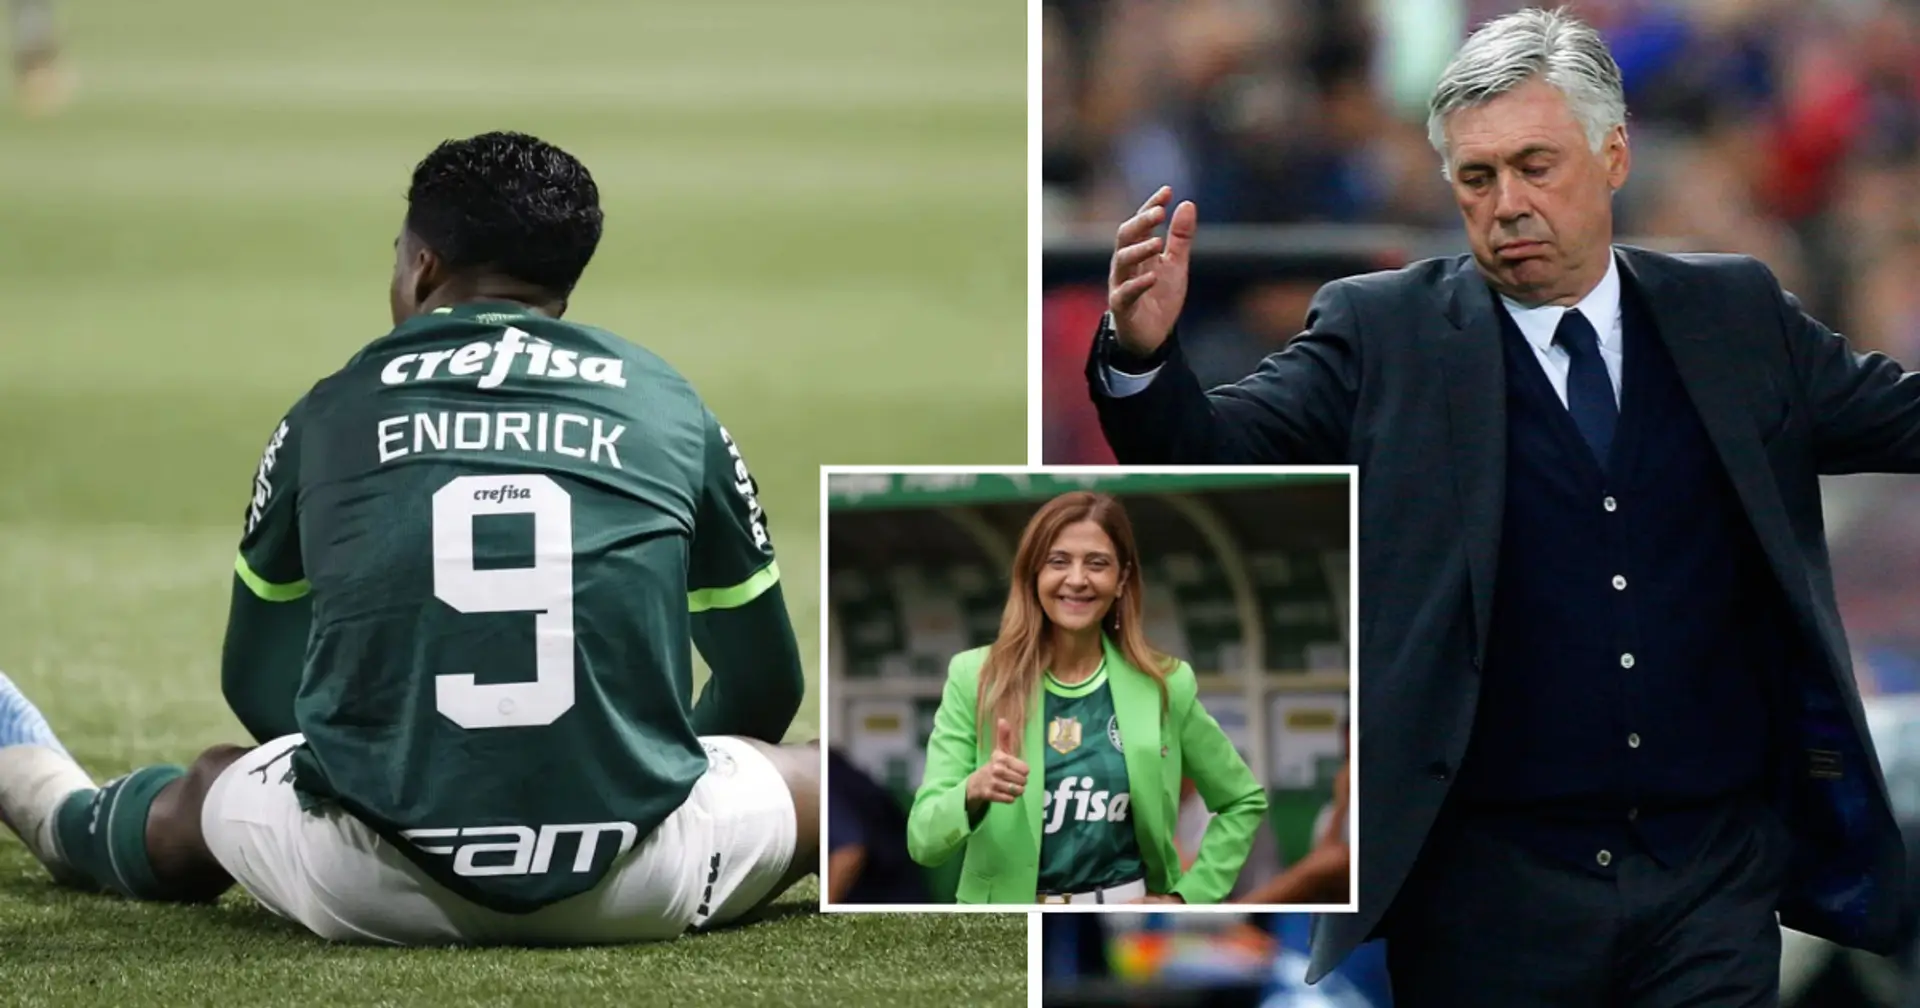 Palmeiras will Madrid davon überzeugen, Endrick bis Dezember in Brasilien zu lassen, und wird darüber mit Madrids Chefscout sprechen - die Spanier drängen auf einen Wechsel im Sommer 